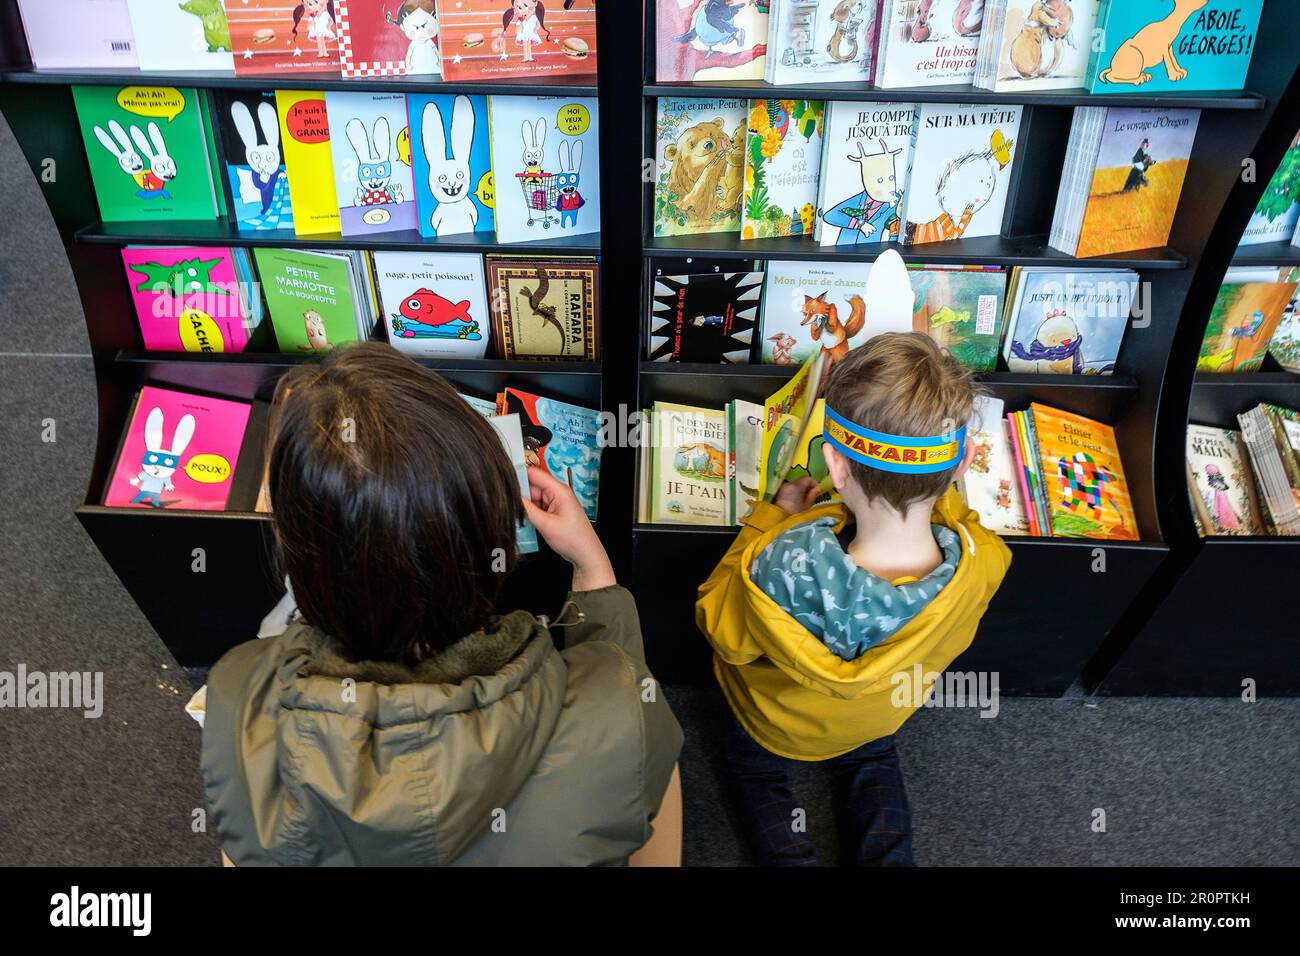 Foire du Livre de Bruxelles les gens se pressent autour des presentoirs 2023 Choisir un livre maman et enfant| Bruxelles Books fair 2023 - scegliere un bo Foto Stock